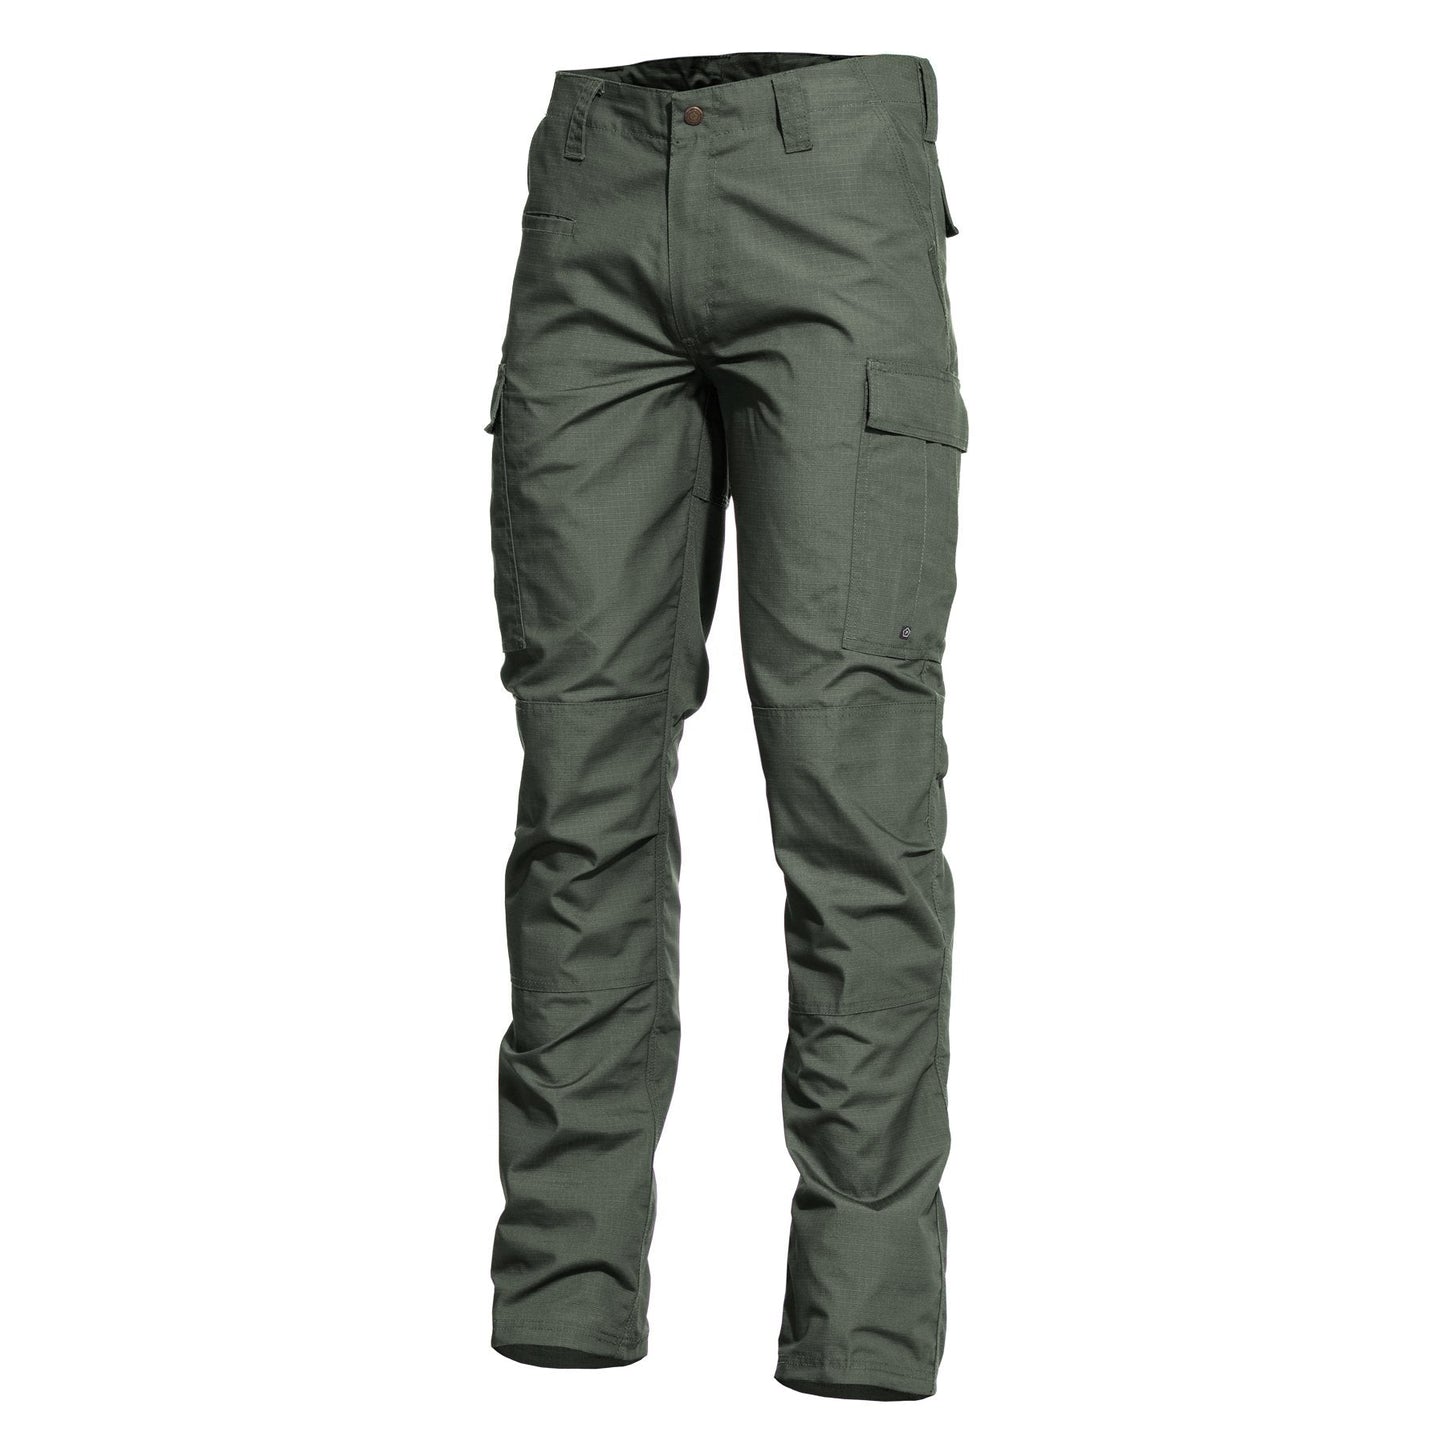 Pentagon K05001-2.0 BDU 2.0 Tactical Pants Camo Green Euro Size 34 (US Size 26") Tactical Distributors Ltd New Zealand